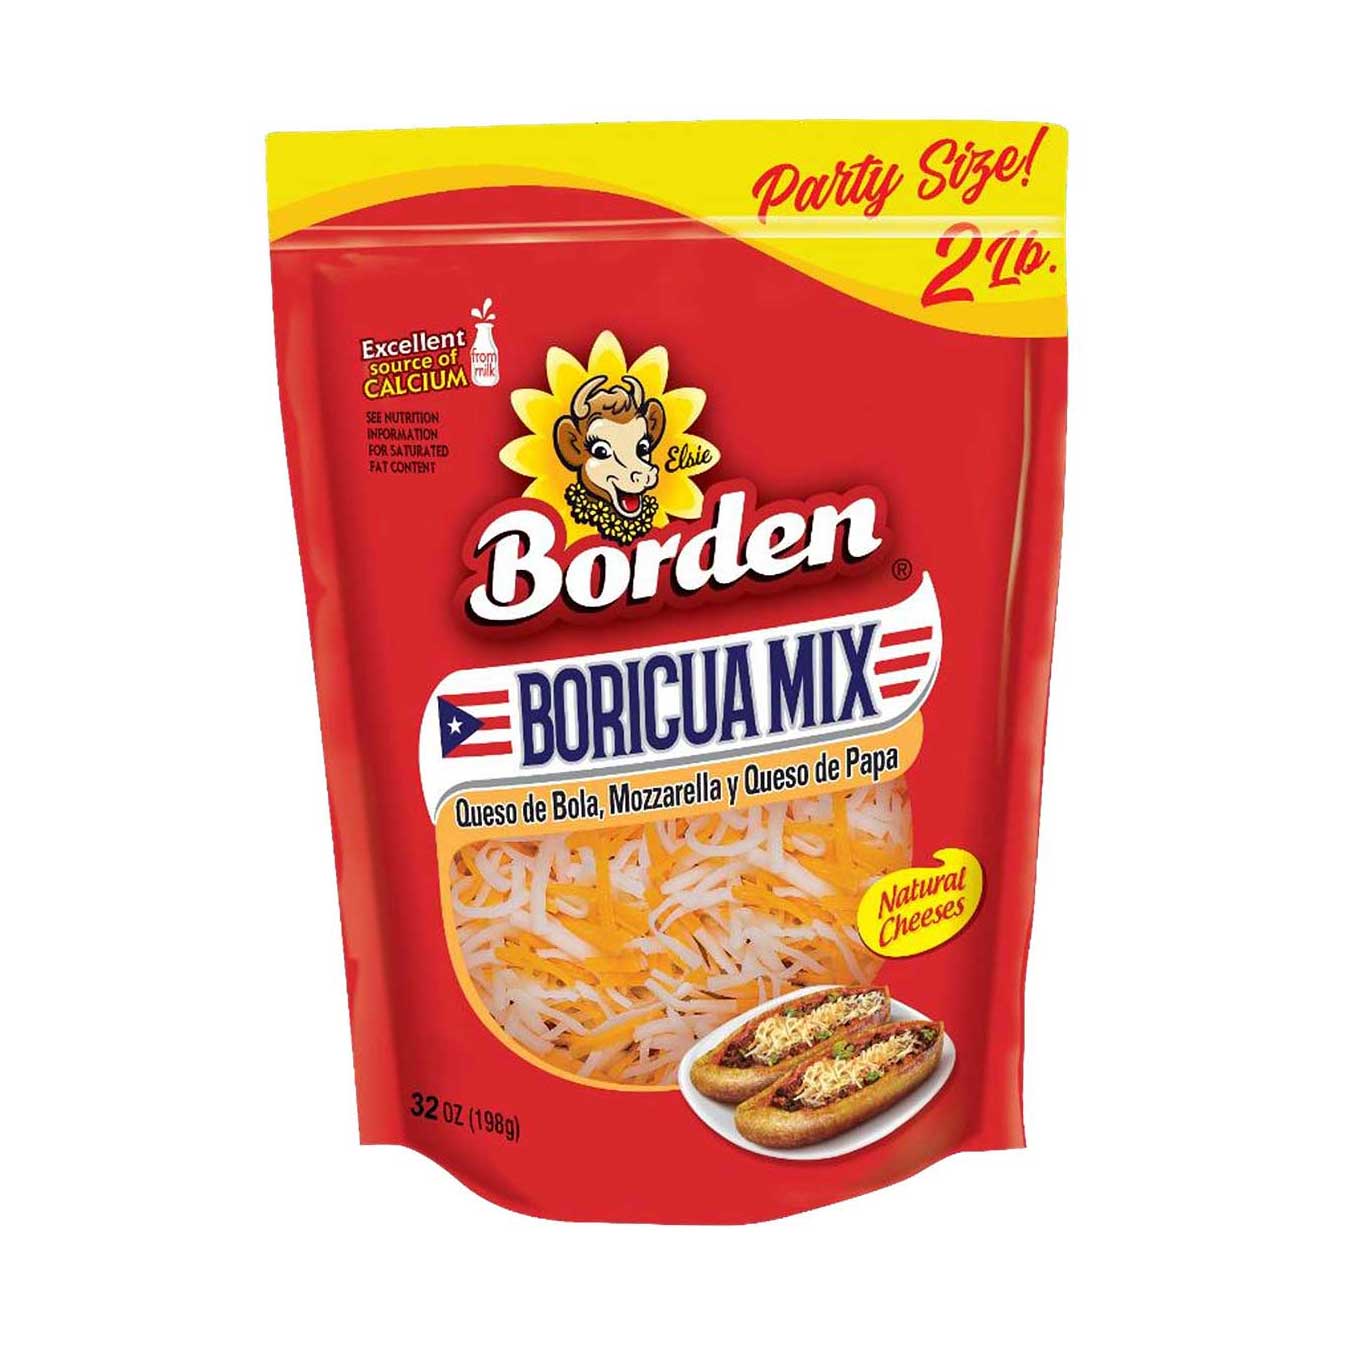 Boricua Mix 2lb. - Borden Puerto Rico